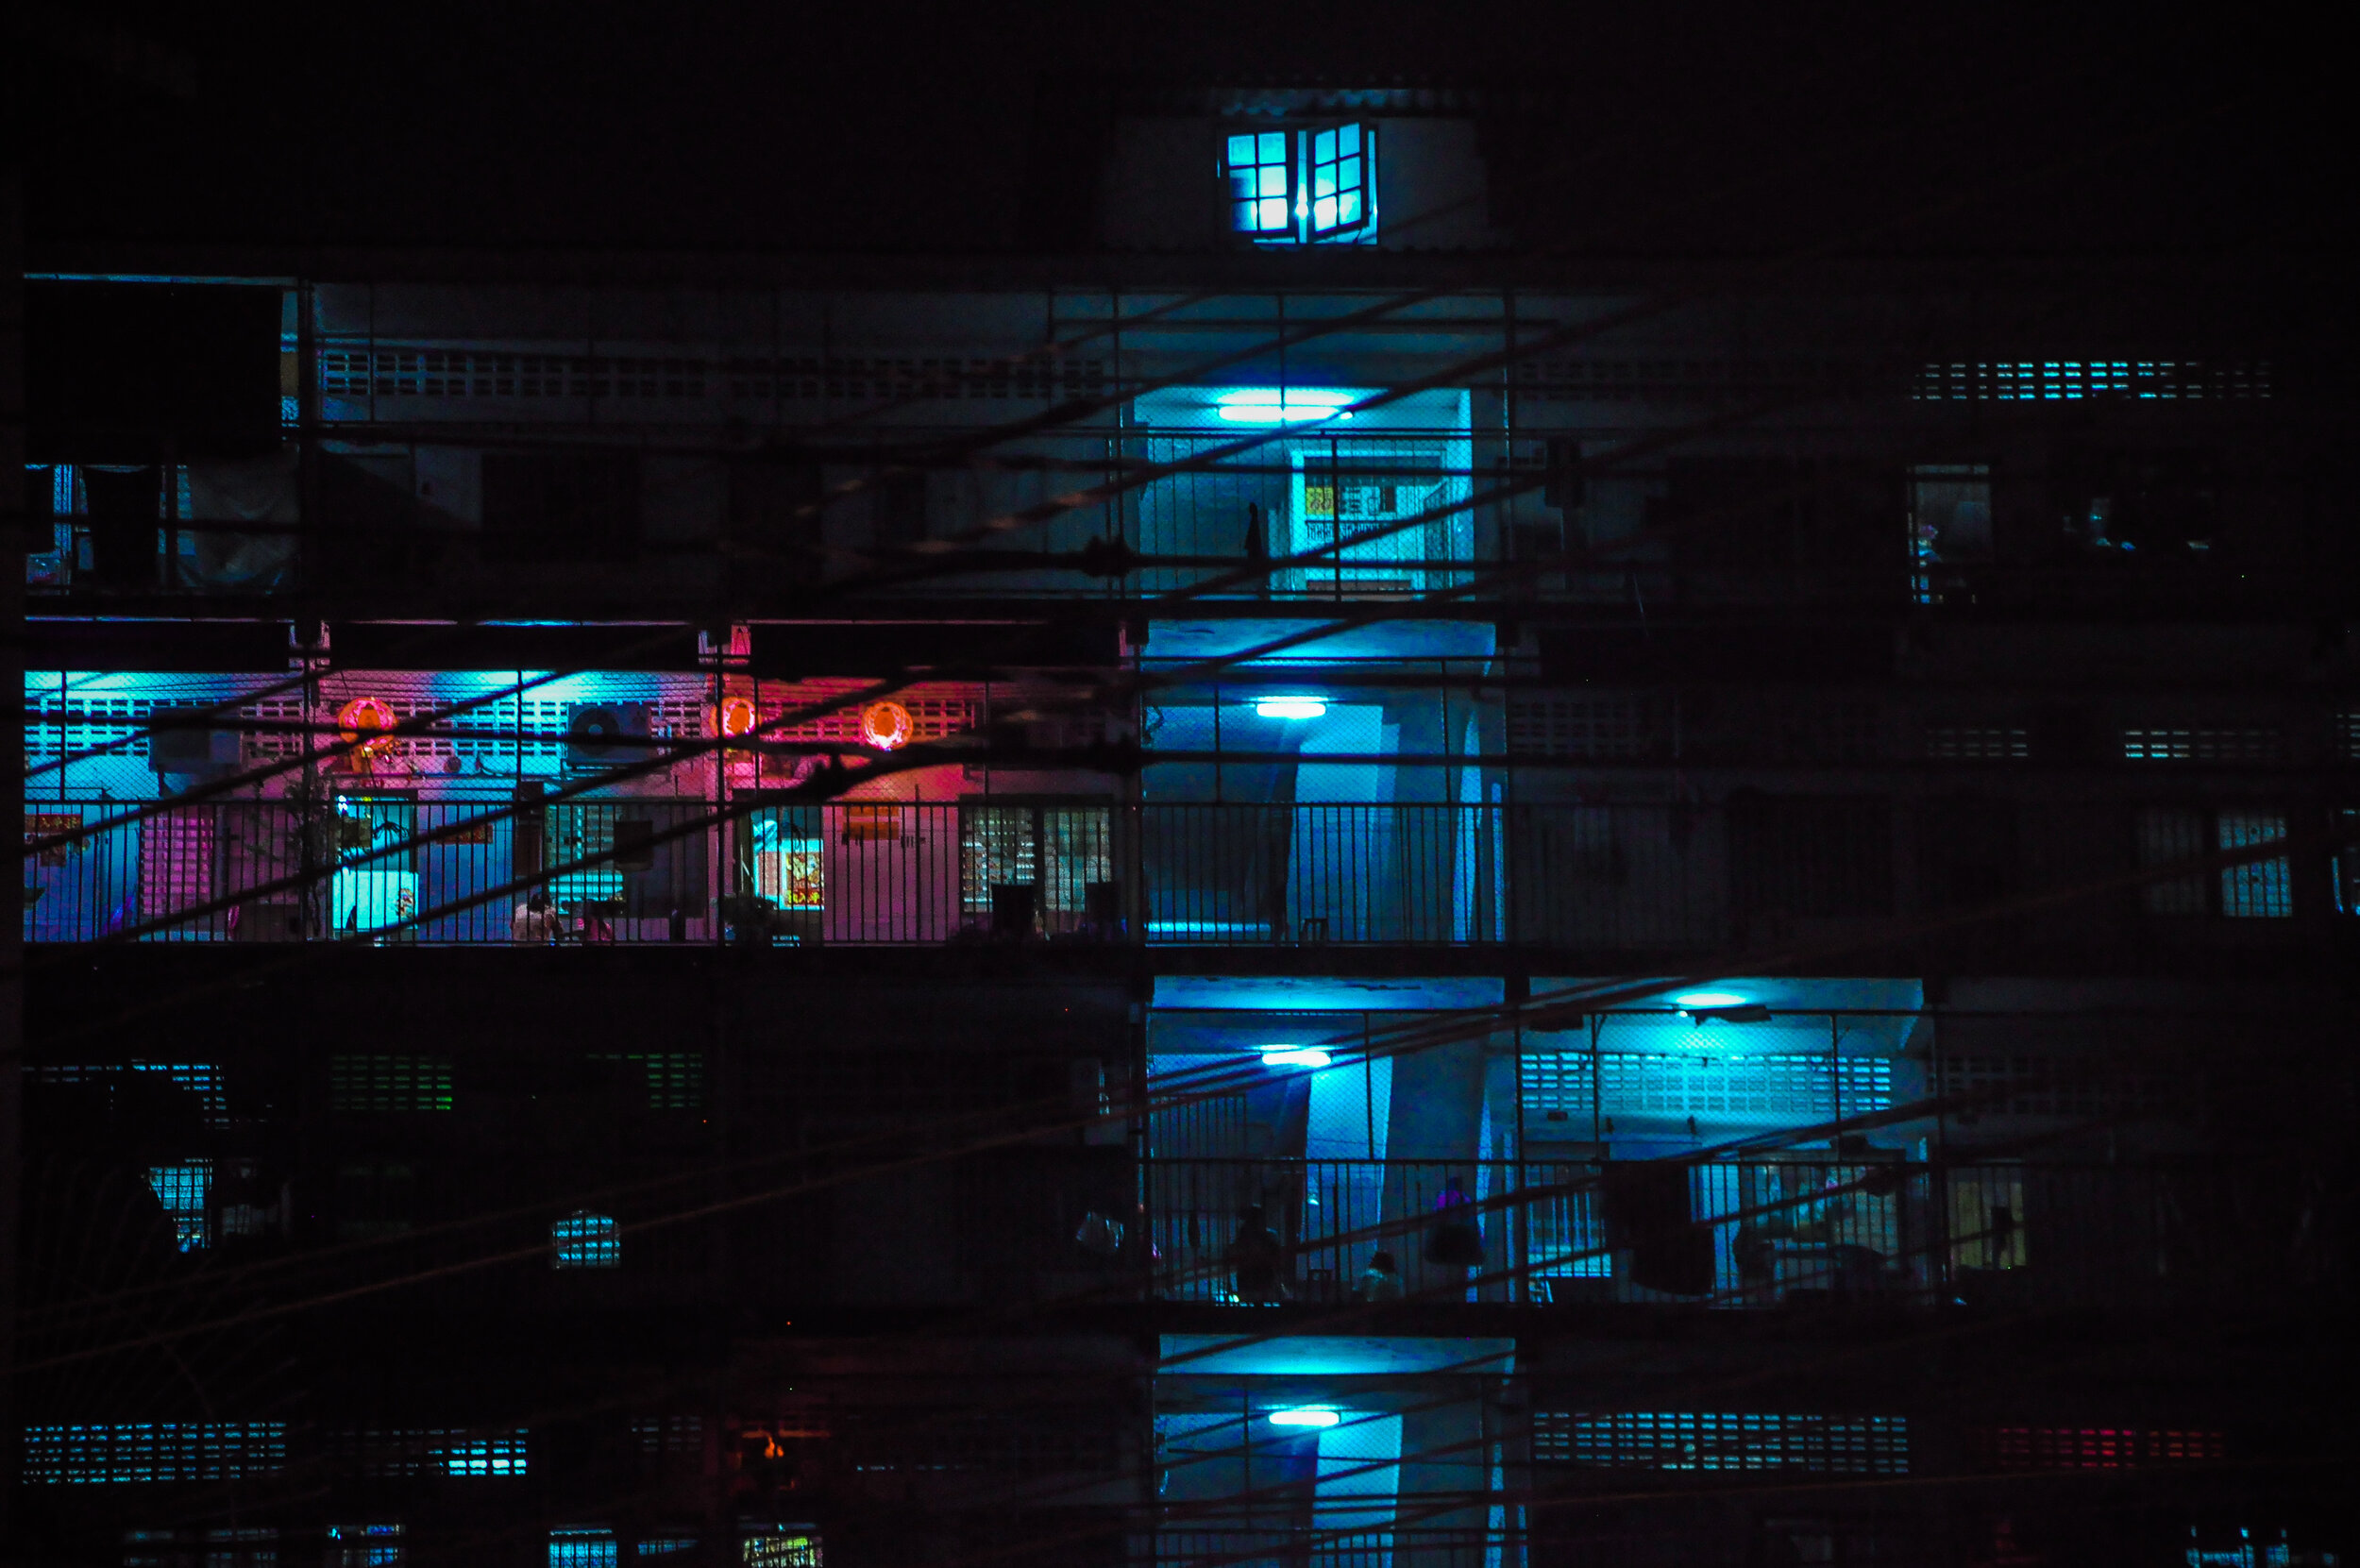 night_neon-5.jpg